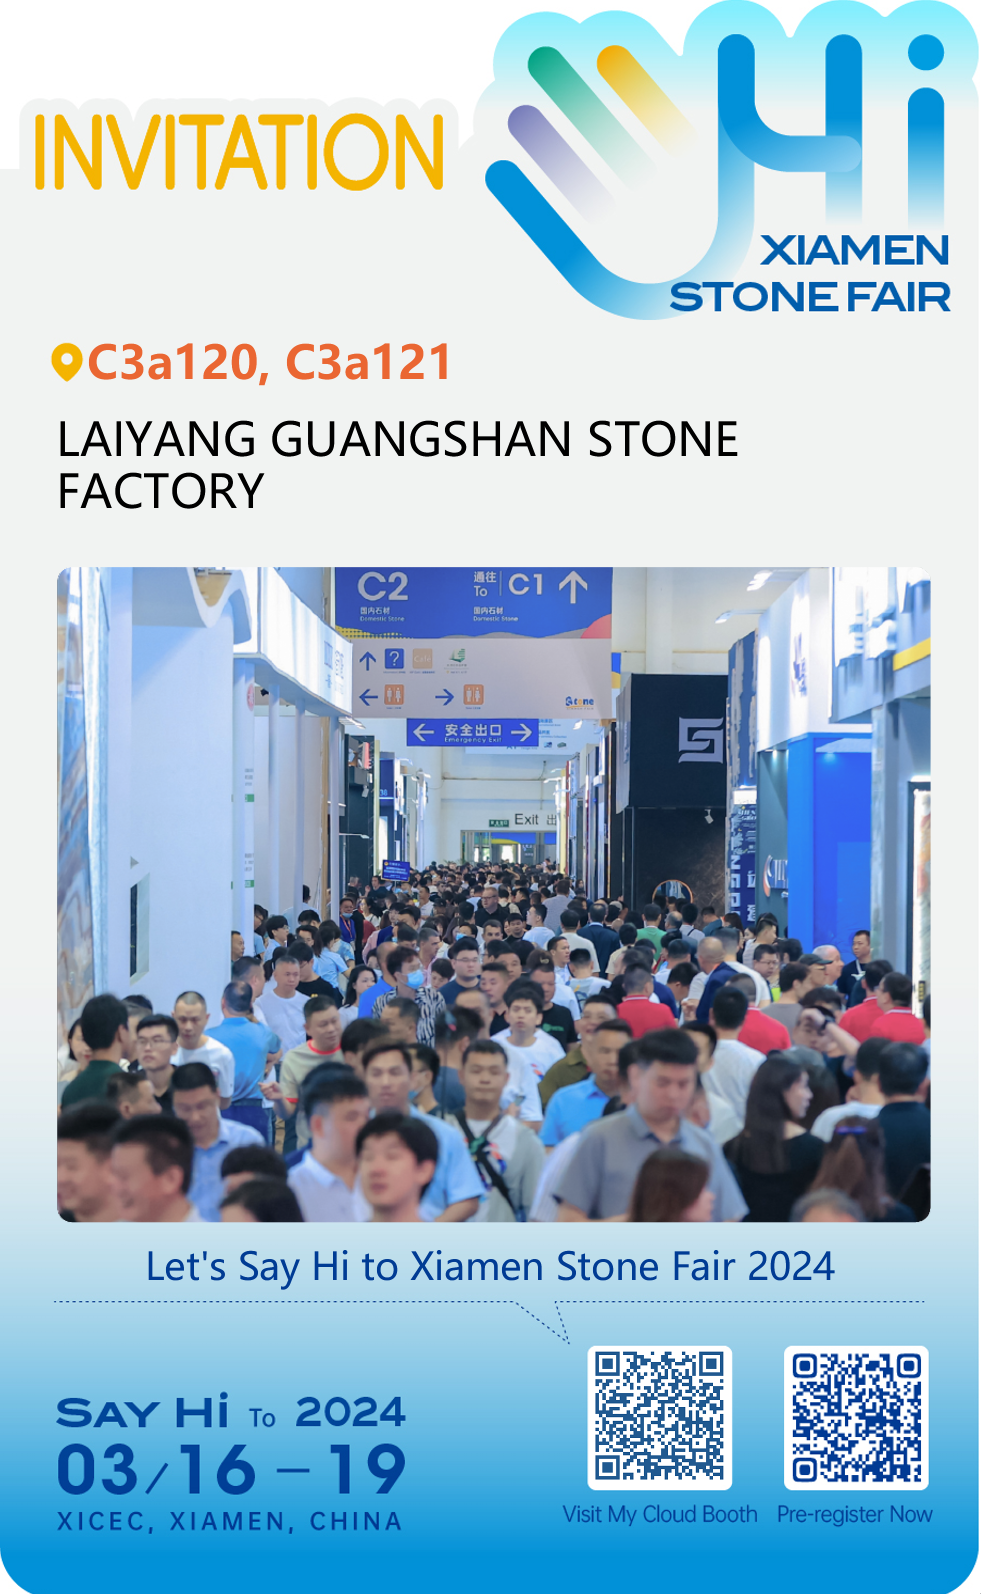 بیست و چهارمین نمایشگاه بین المللی سنگ Xiamen چین (شماره غرفه ما: C3a120 و C3a121)